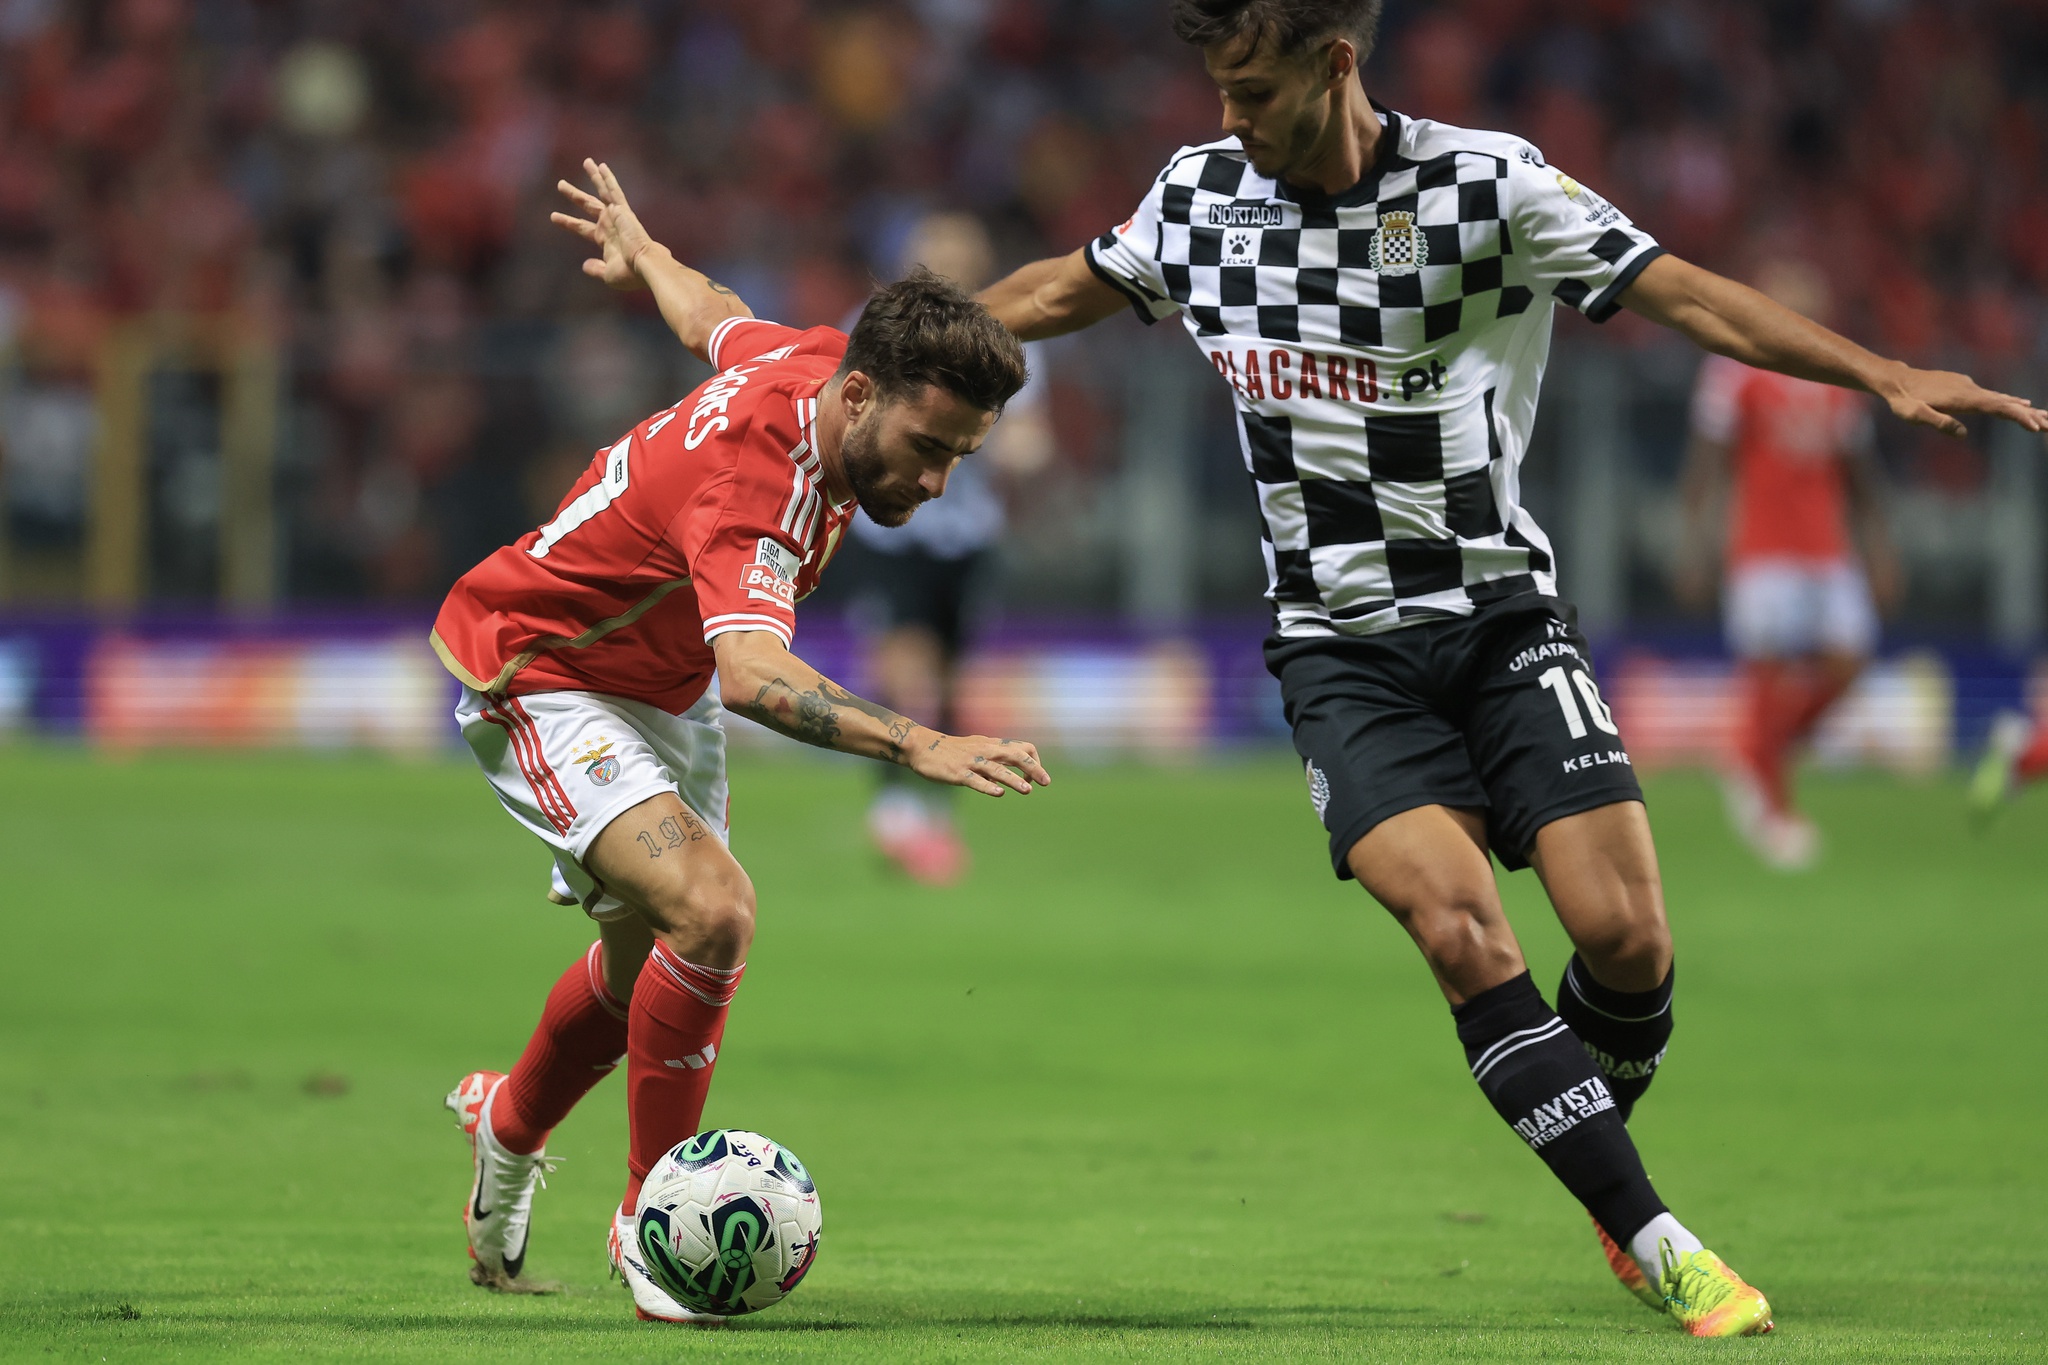 Champions: Sp. Braga decidido a não oscilar em jogo de tudo ou nada, Futebol internacional